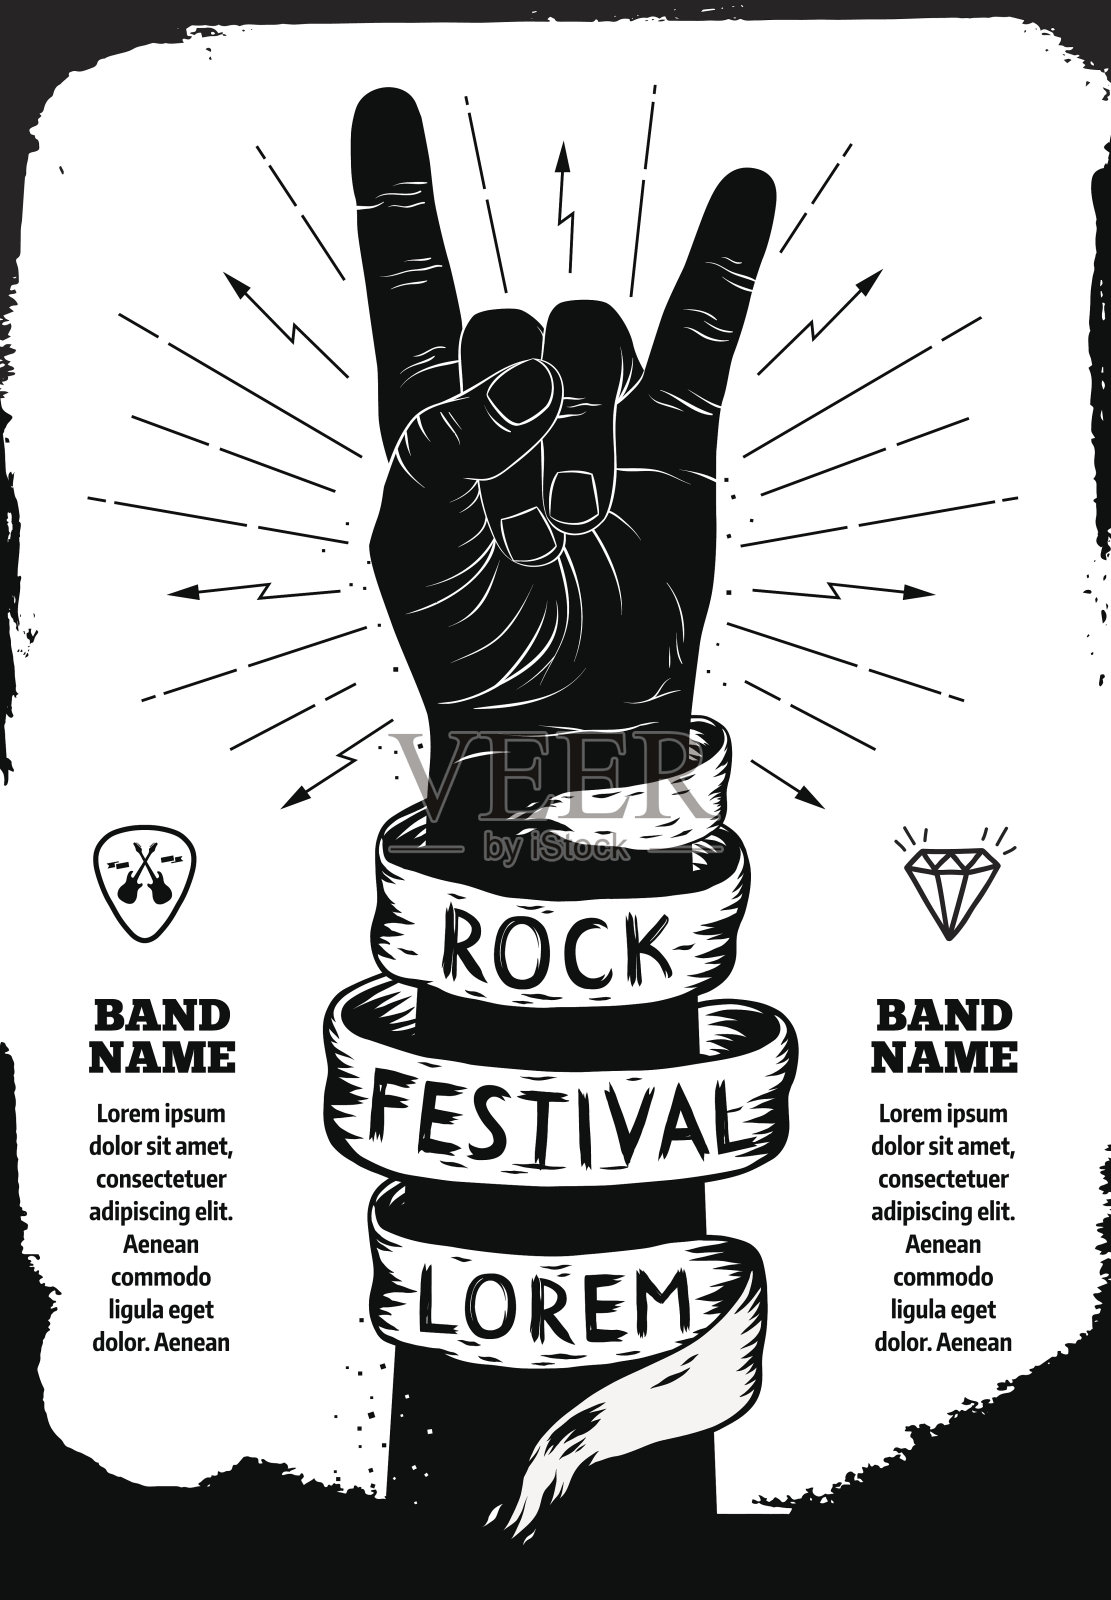 摇滚音乐节的海报设计模板素材